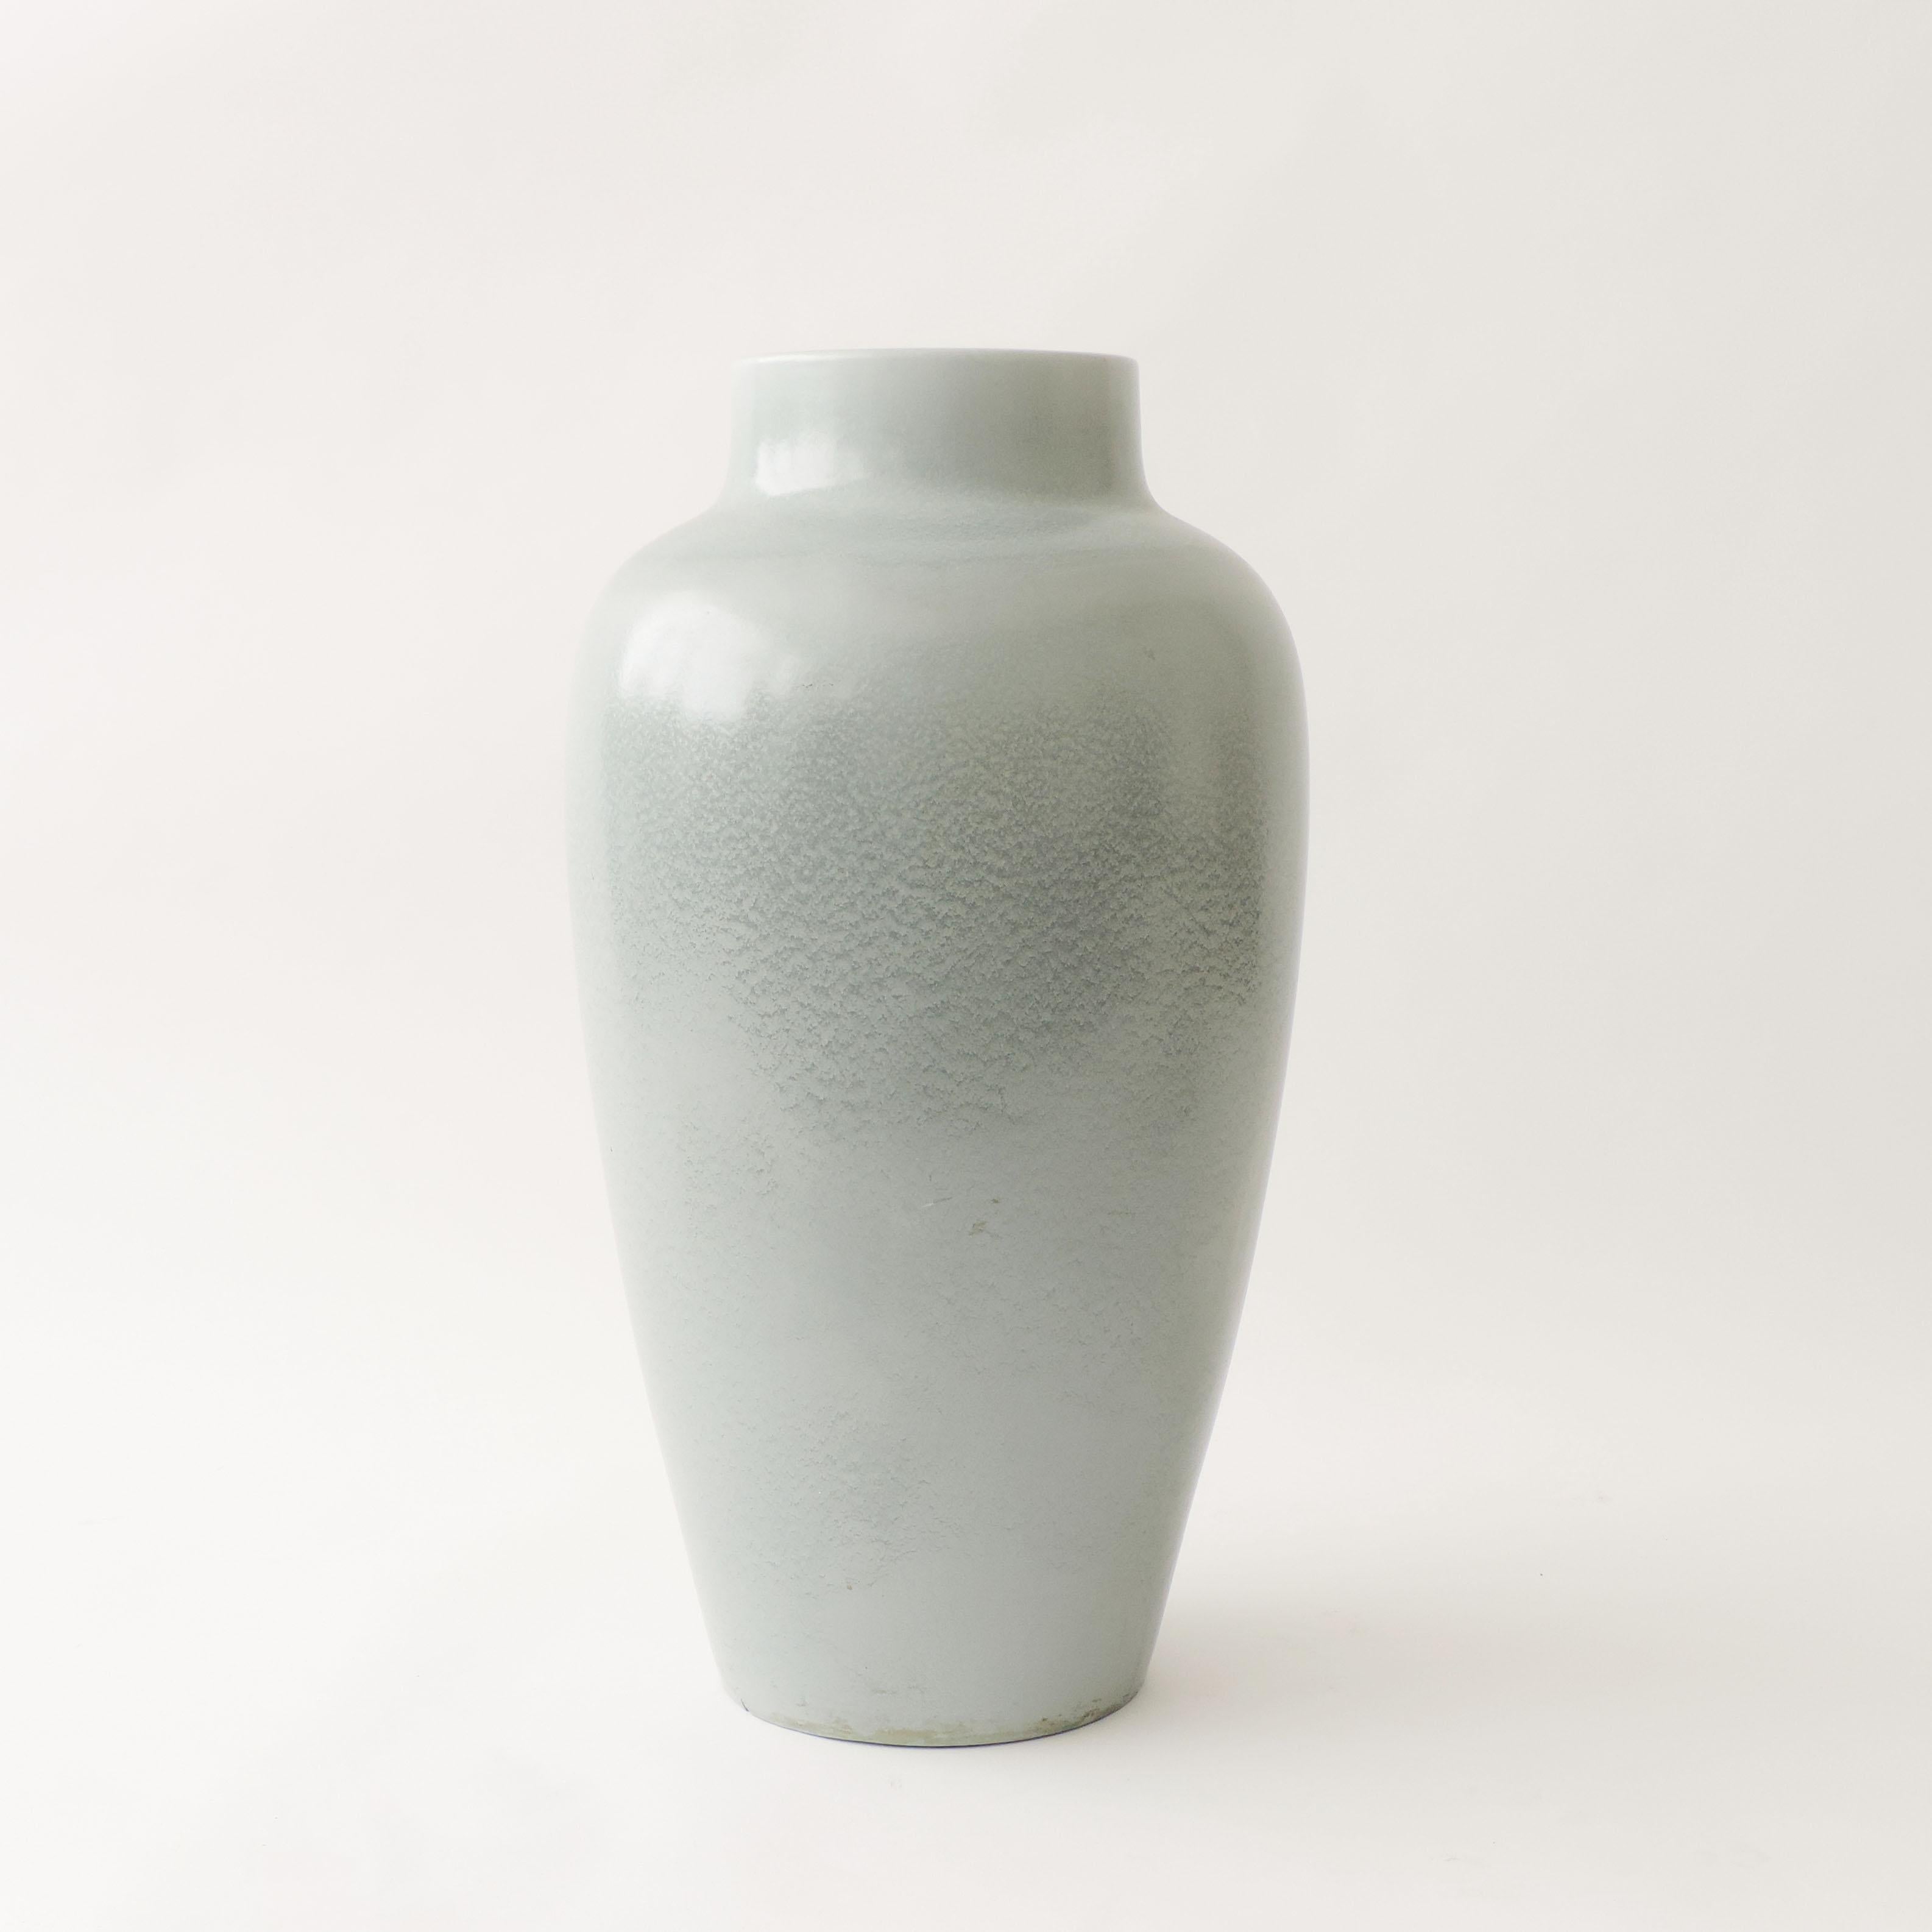 Monumental S.C.I Ceramic vase, Italy 1940s.